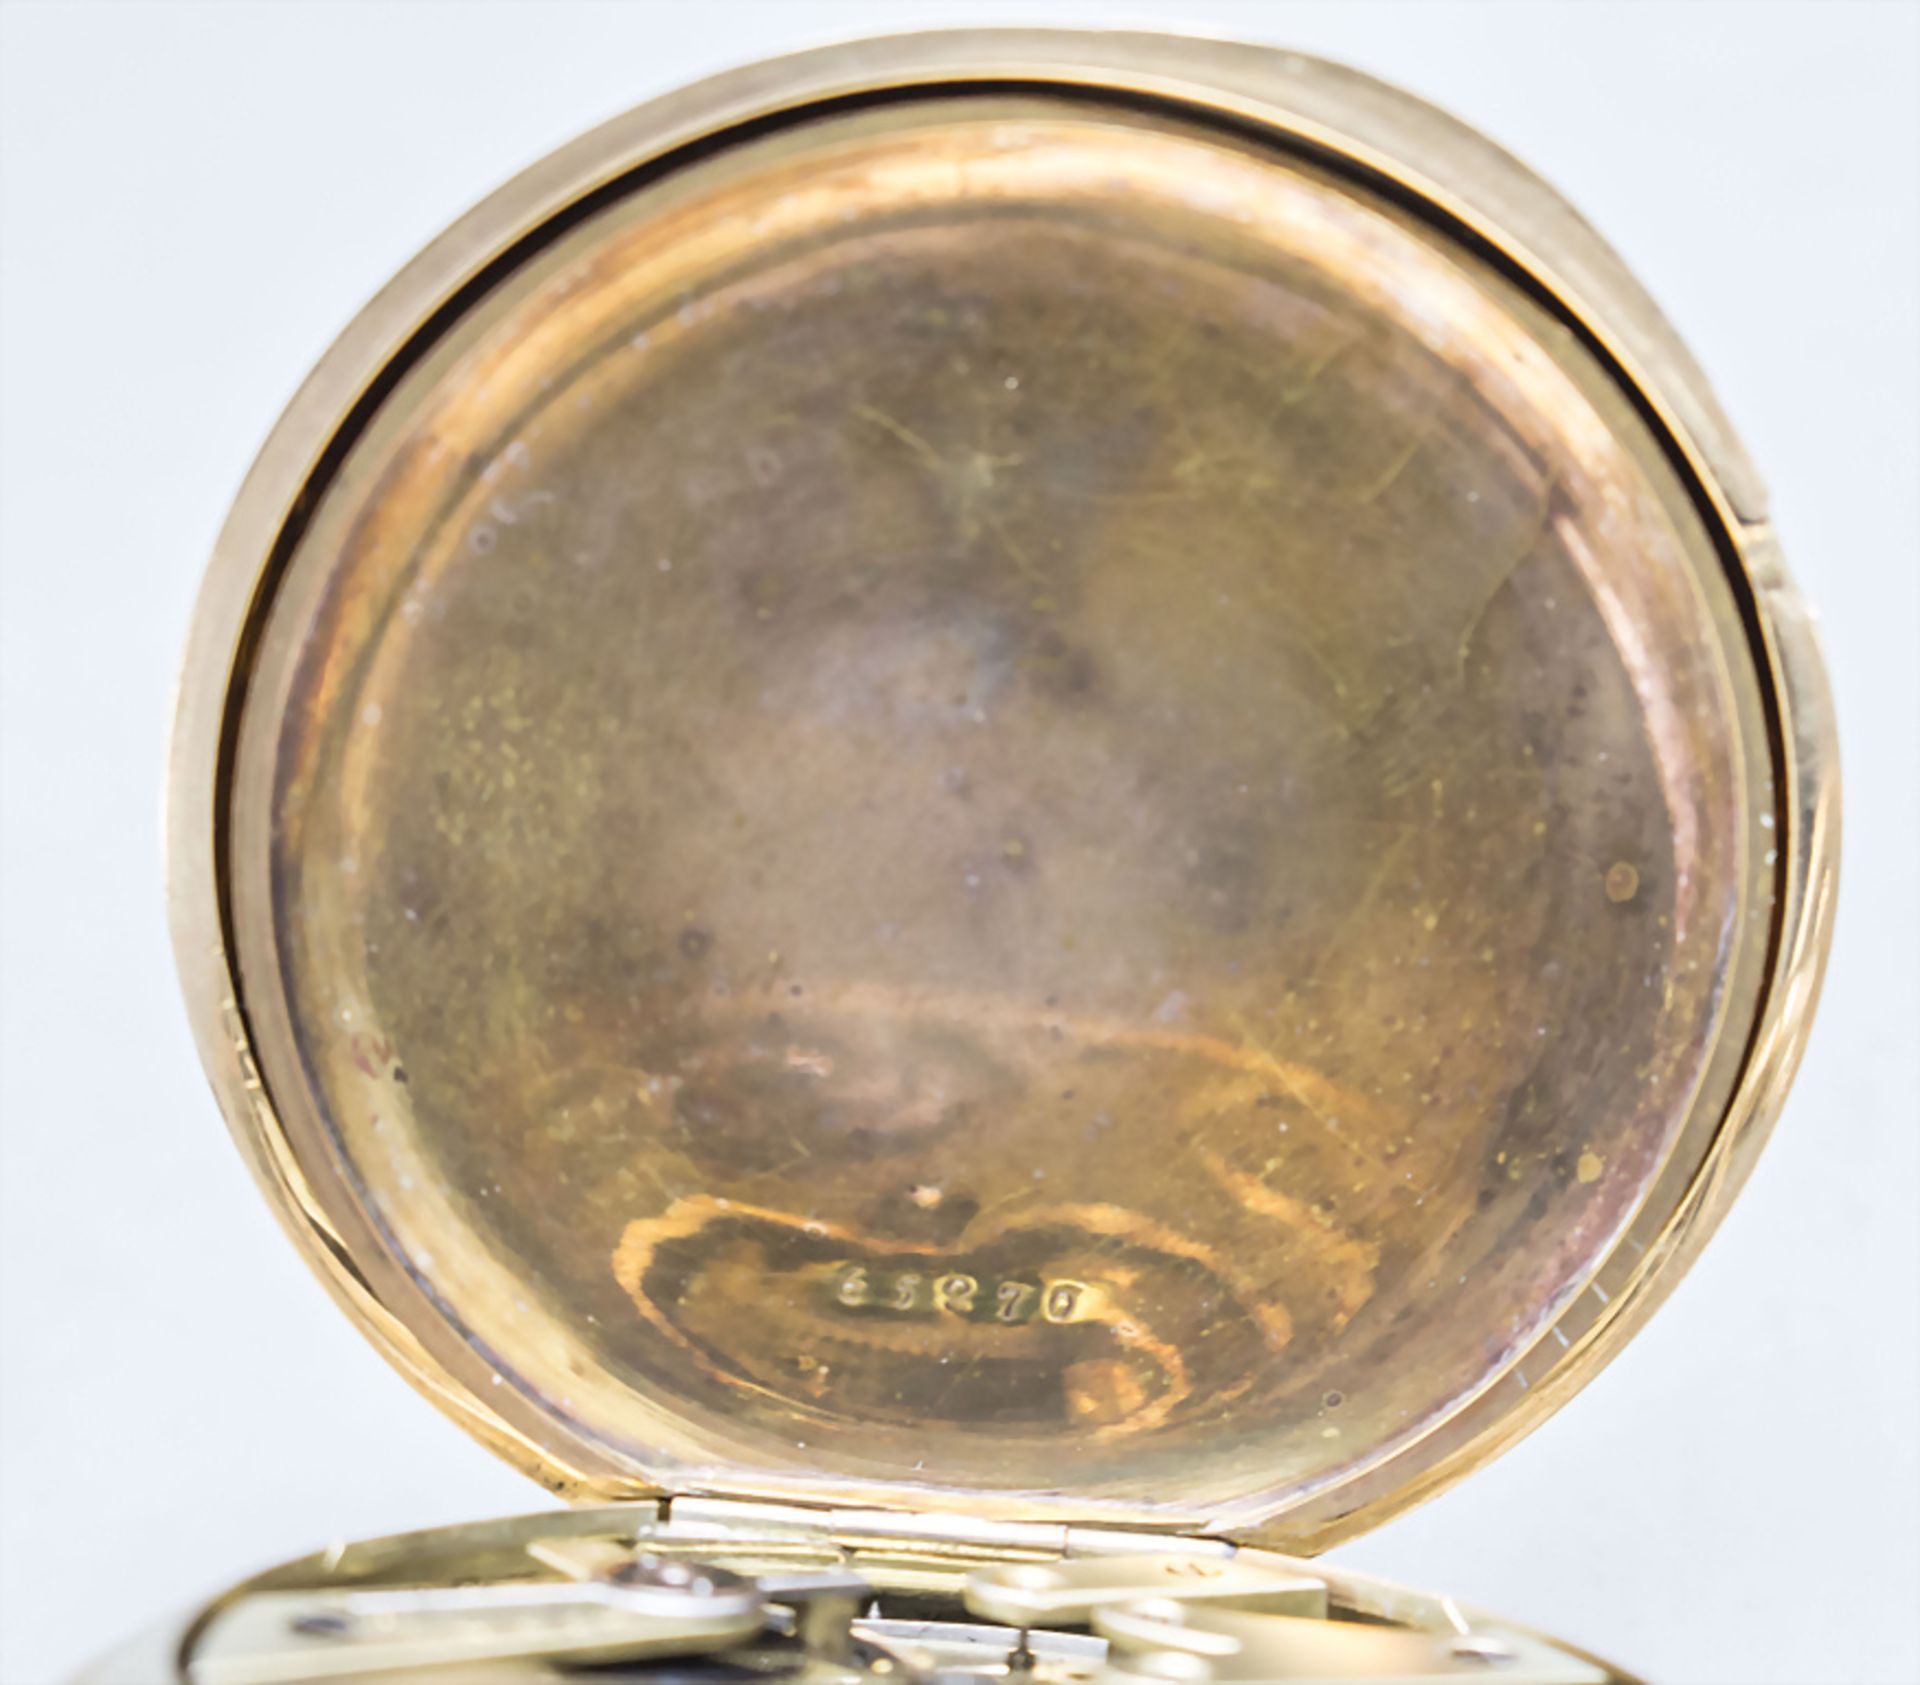 Savonette Taschenuhr Chronometer / A 14 ct gold open face pocket watch, Gebr. Eppner, Berlin, ... - Bild 6 aus 9